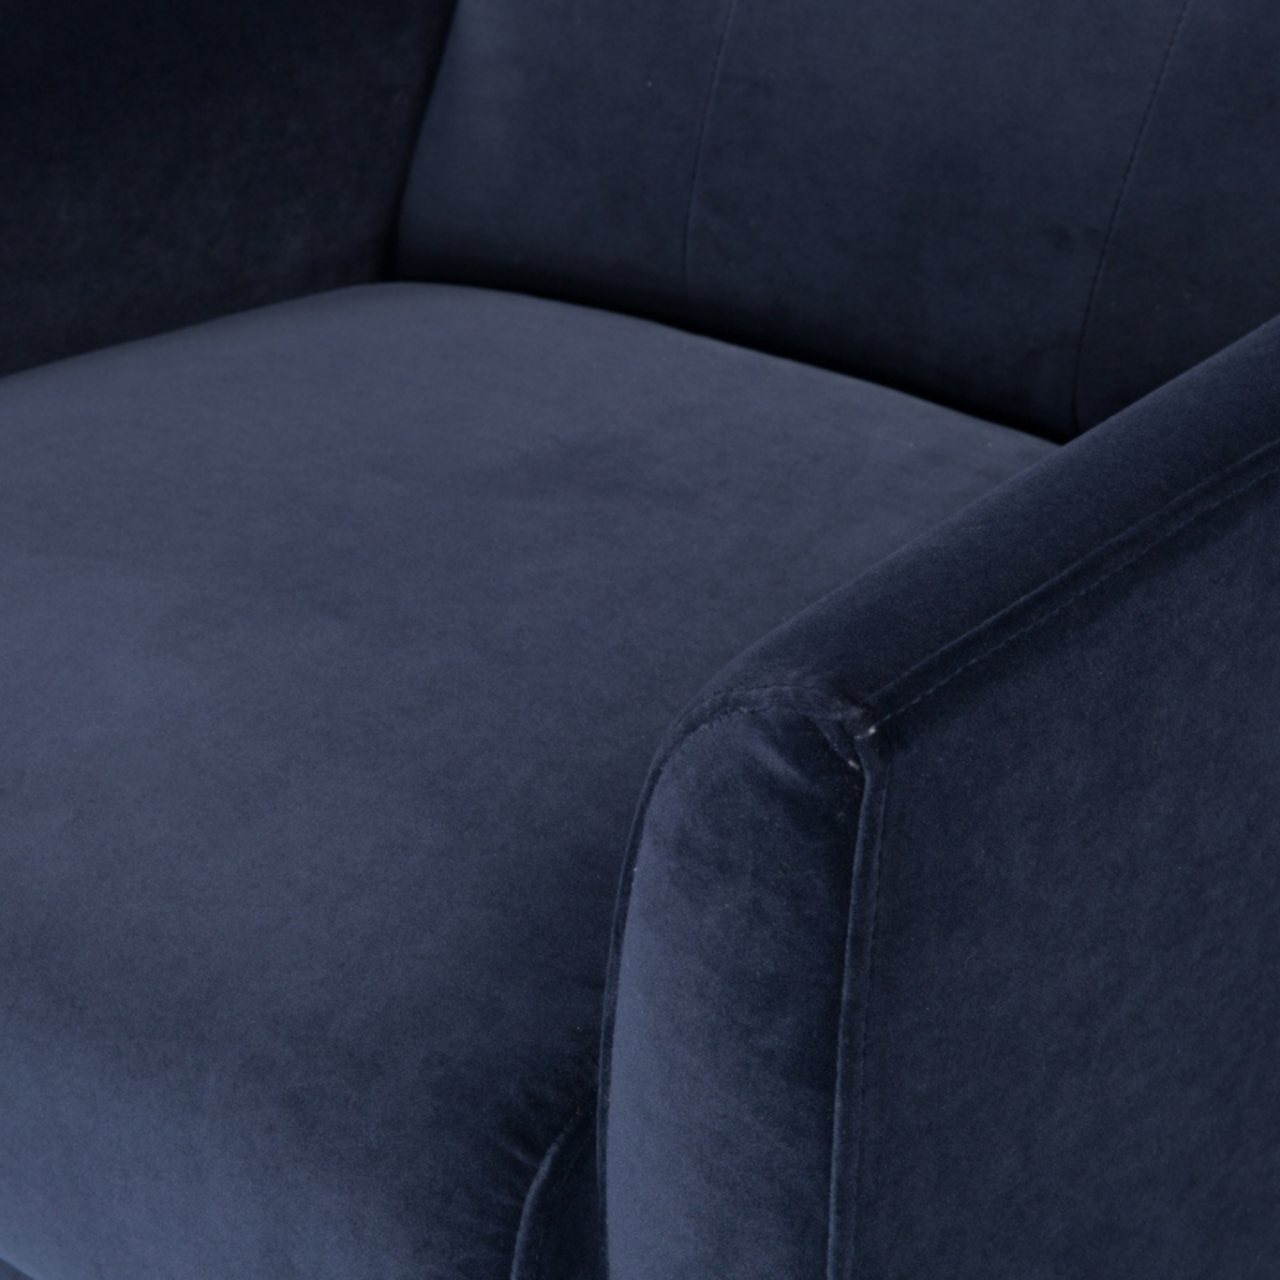 detail of modern button backed armchair upholstered in midnight blue velvet